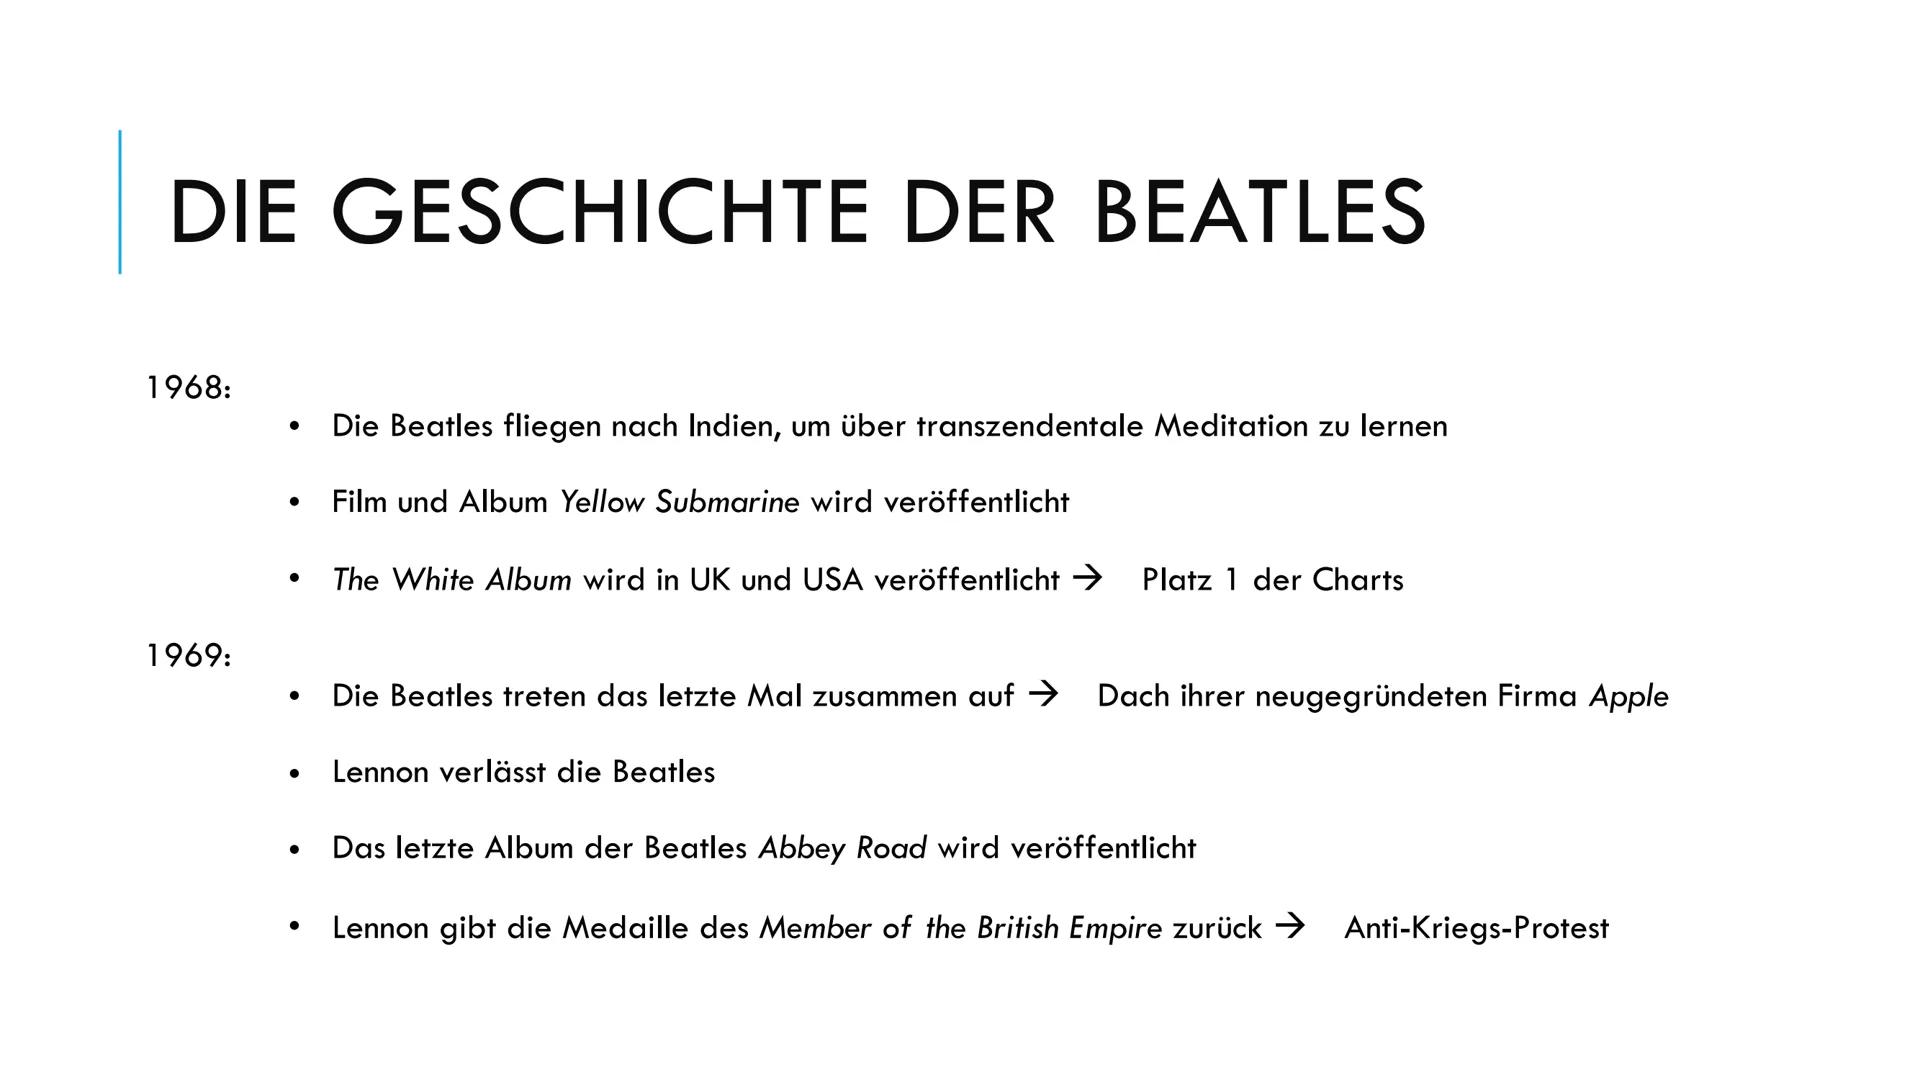 
<p>Die Beatles wurden in den späten 1950er Jahren in Liverpool, Vereinigten Königreich, gegründet. Die Mitglieder waren John Lennon, Paul M